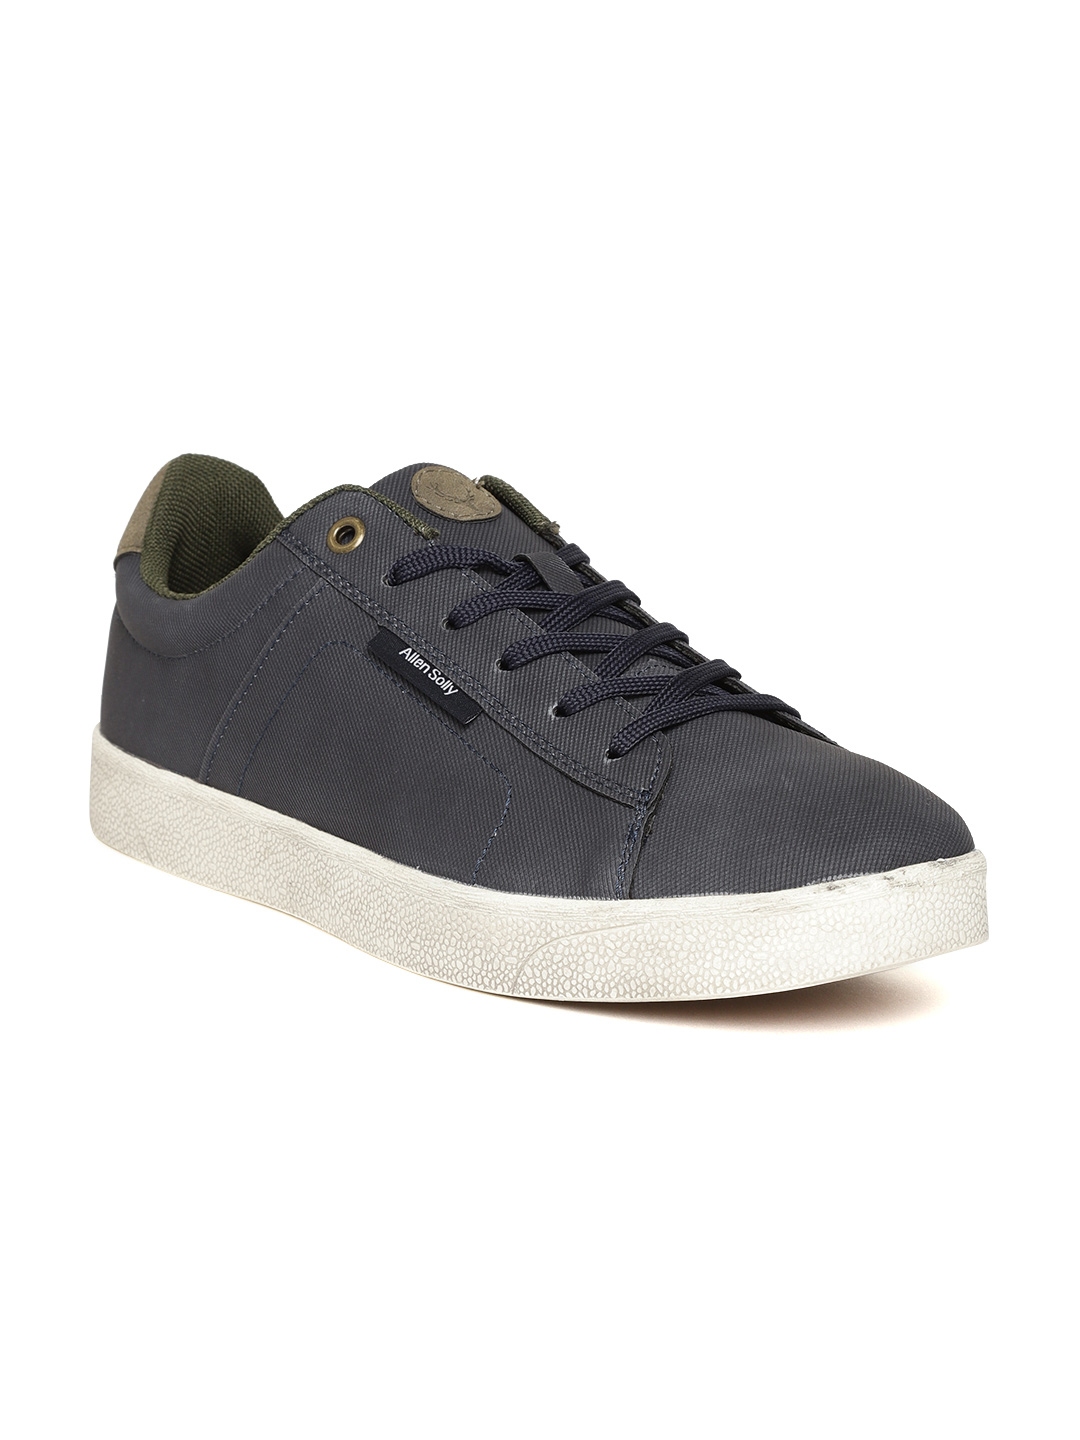 Buy Allen Solly Men Navy Blue Sneakers - Casual Shoes for Men 9775341 ...